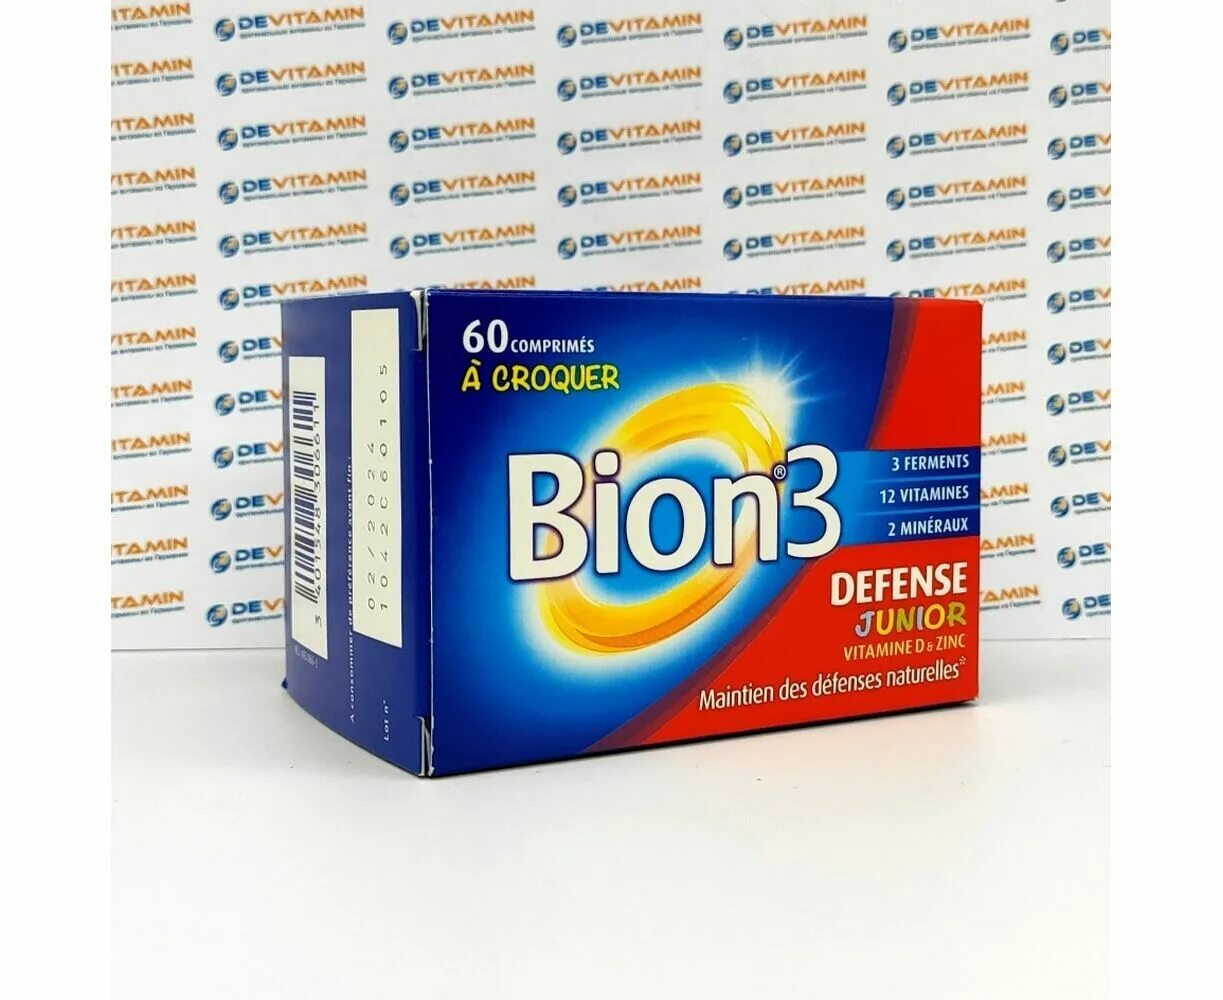 Лаб бион крем. Бион 3 Юниор. Витамин Бион 3 детские. Bion 3 Junior витамины для детей. Бион 3 капсулы.